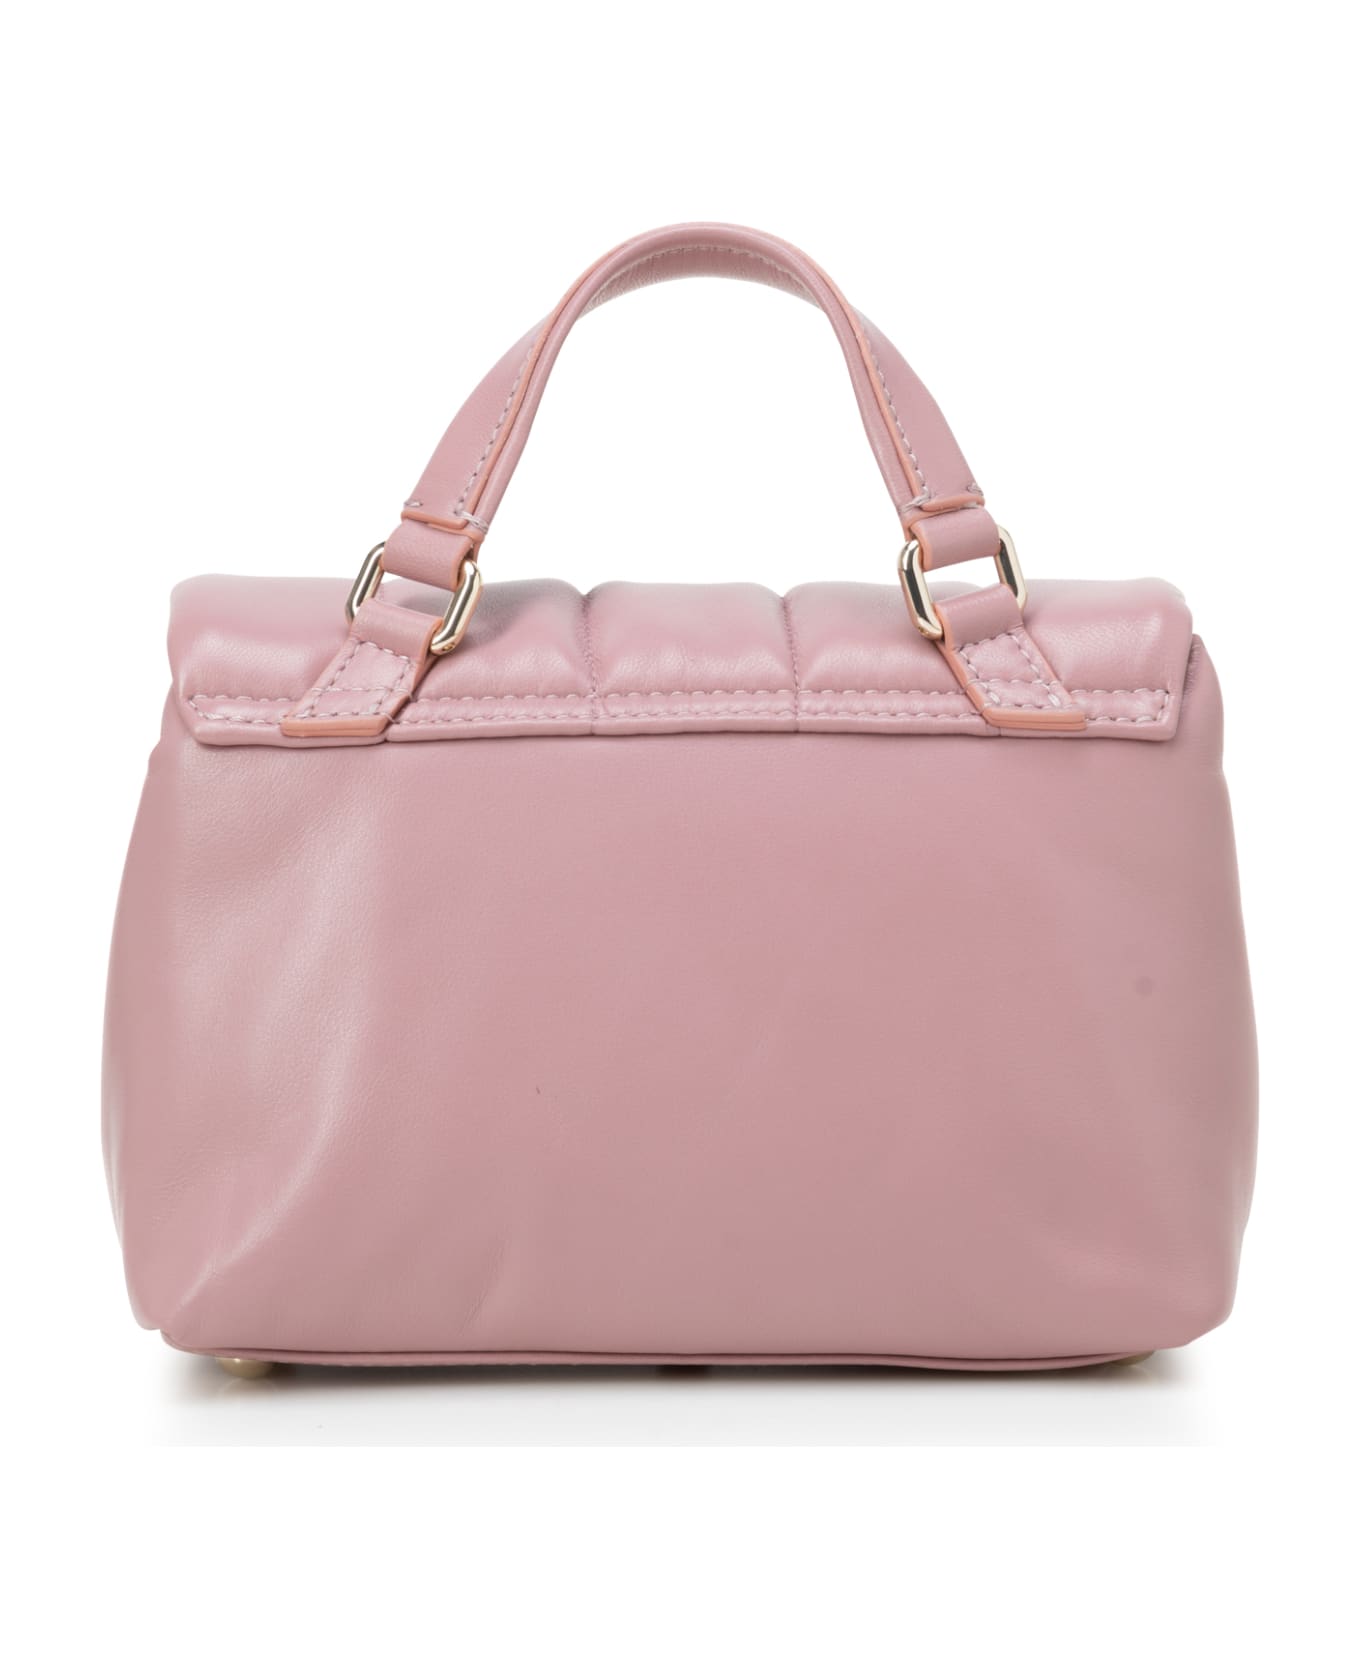 Zanellato Shoulder Bags - Legno di rosa